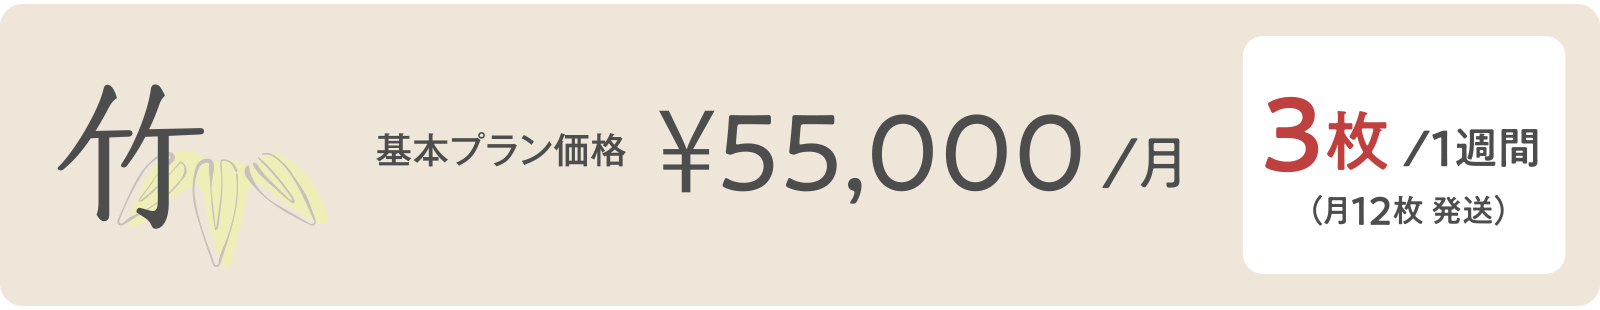 竹 ¥55,000/月 3枚/１週間